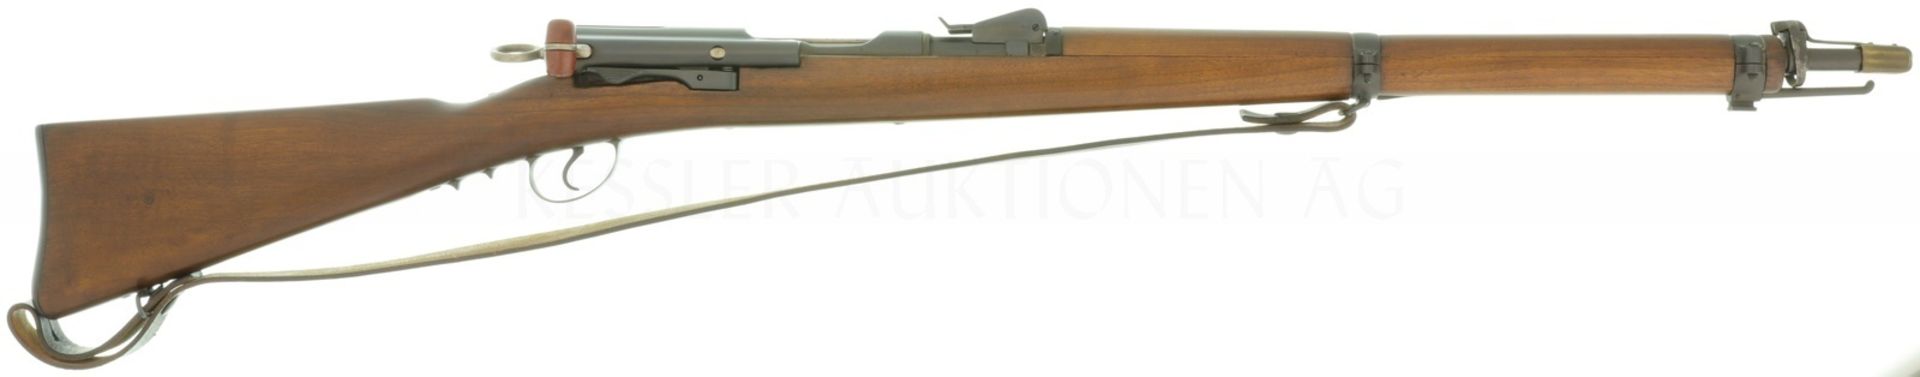 Kadettengewehr, W+F Bern, Mod. 1897, Kal. 7.5mm/GP1890